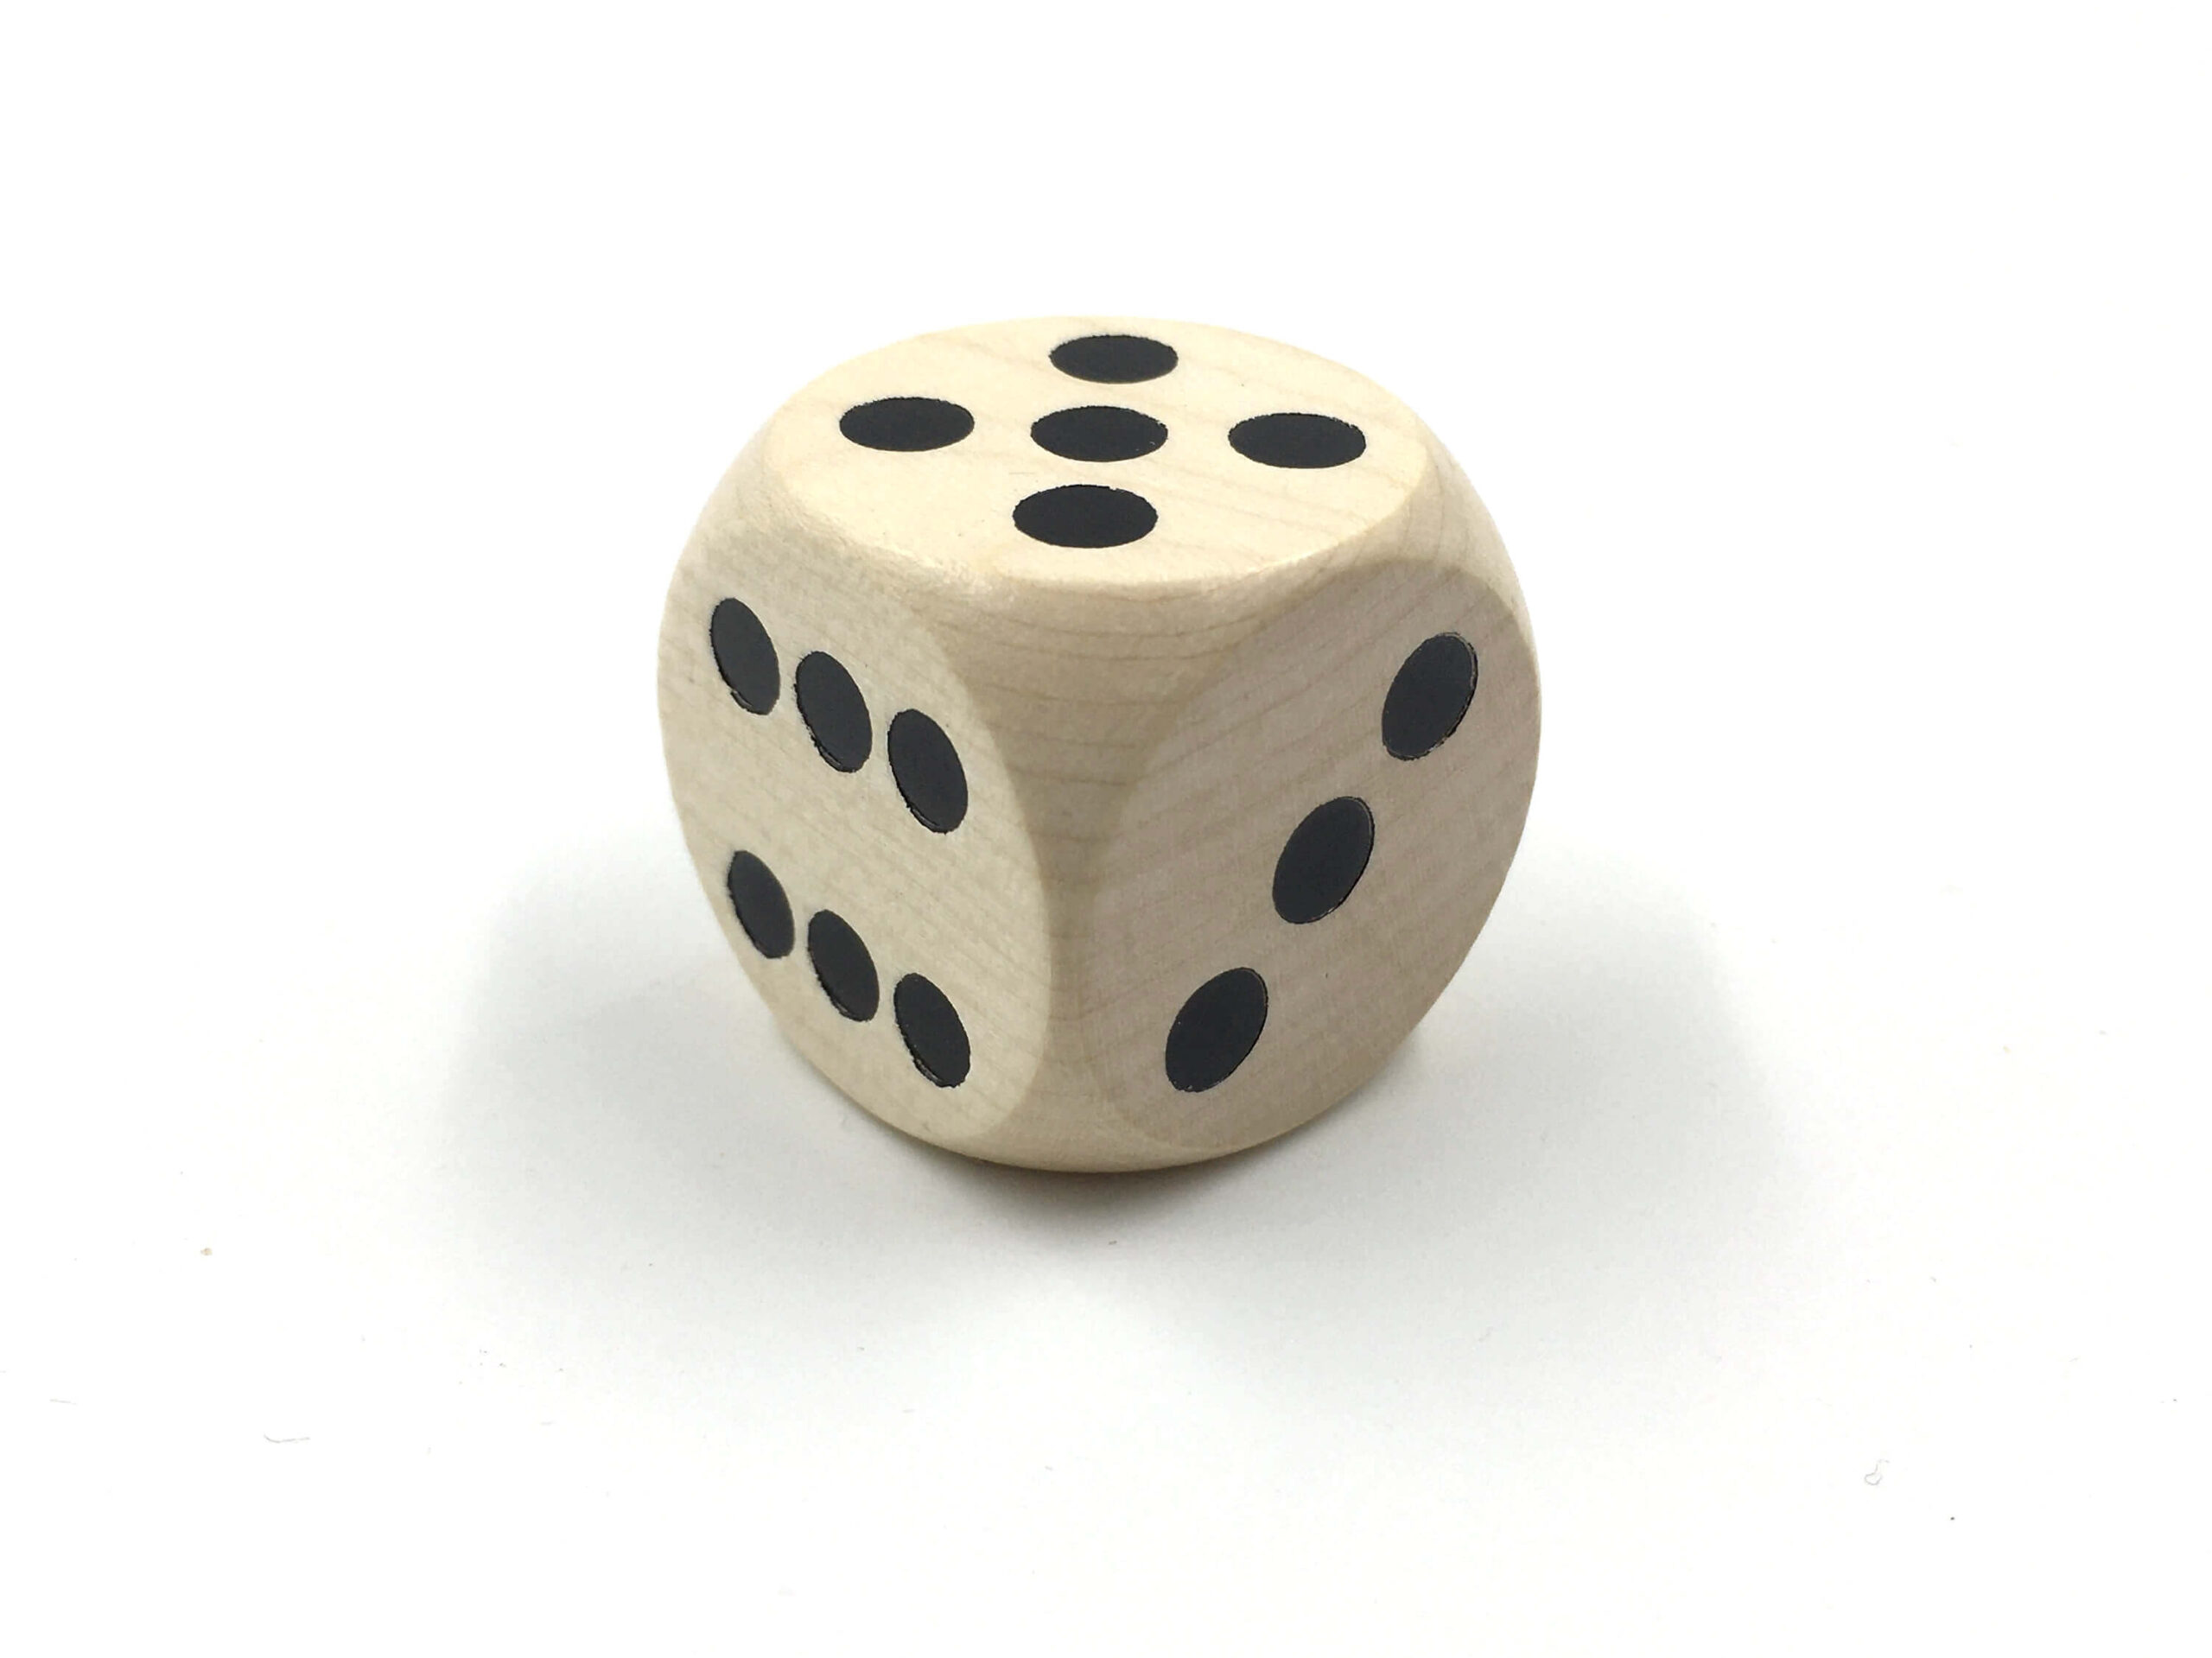 Lesena igralna kocka 25 mm